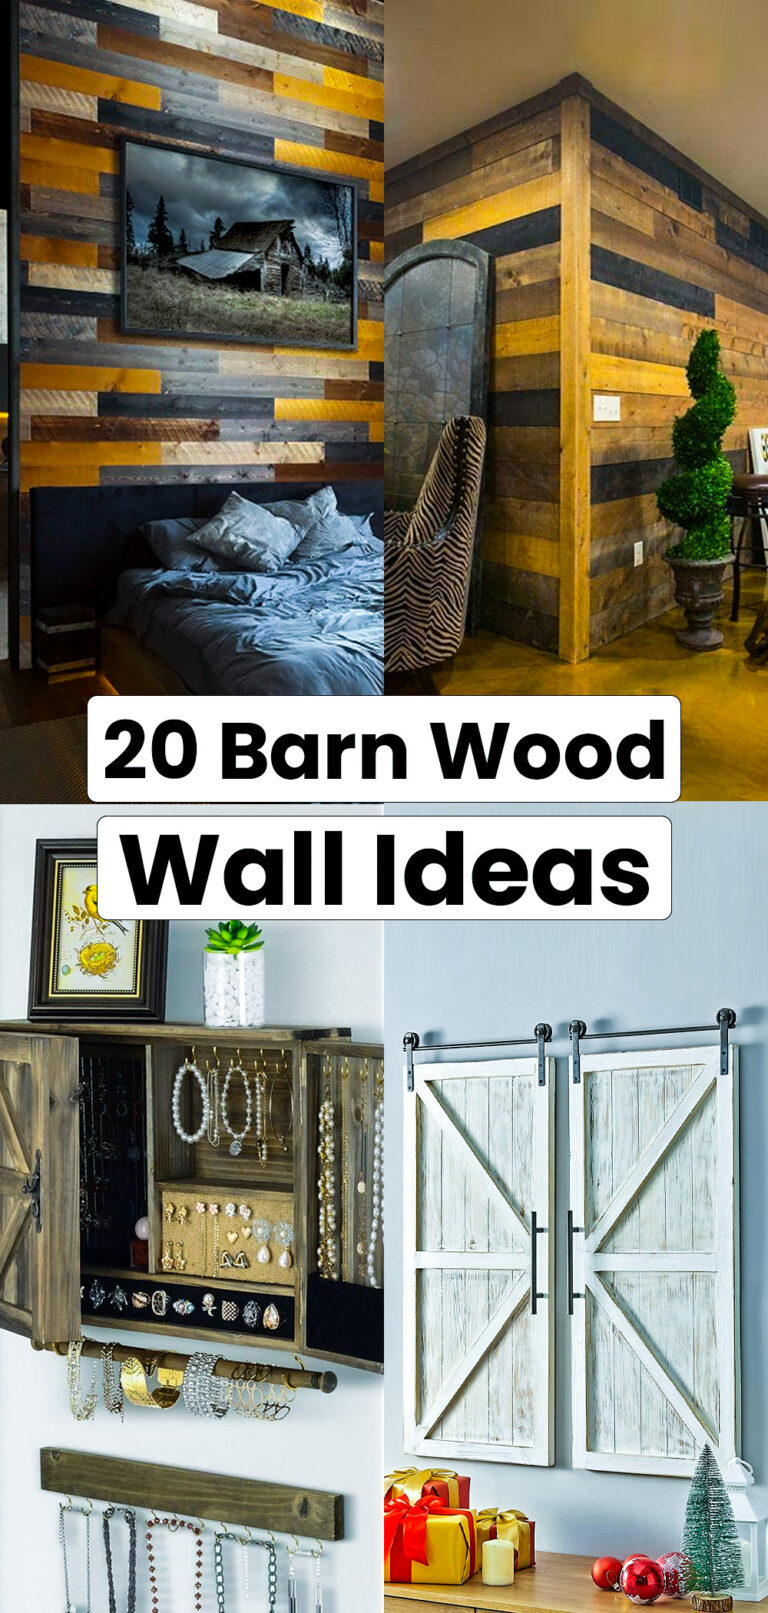 16 Barn Wood Wall Ideas